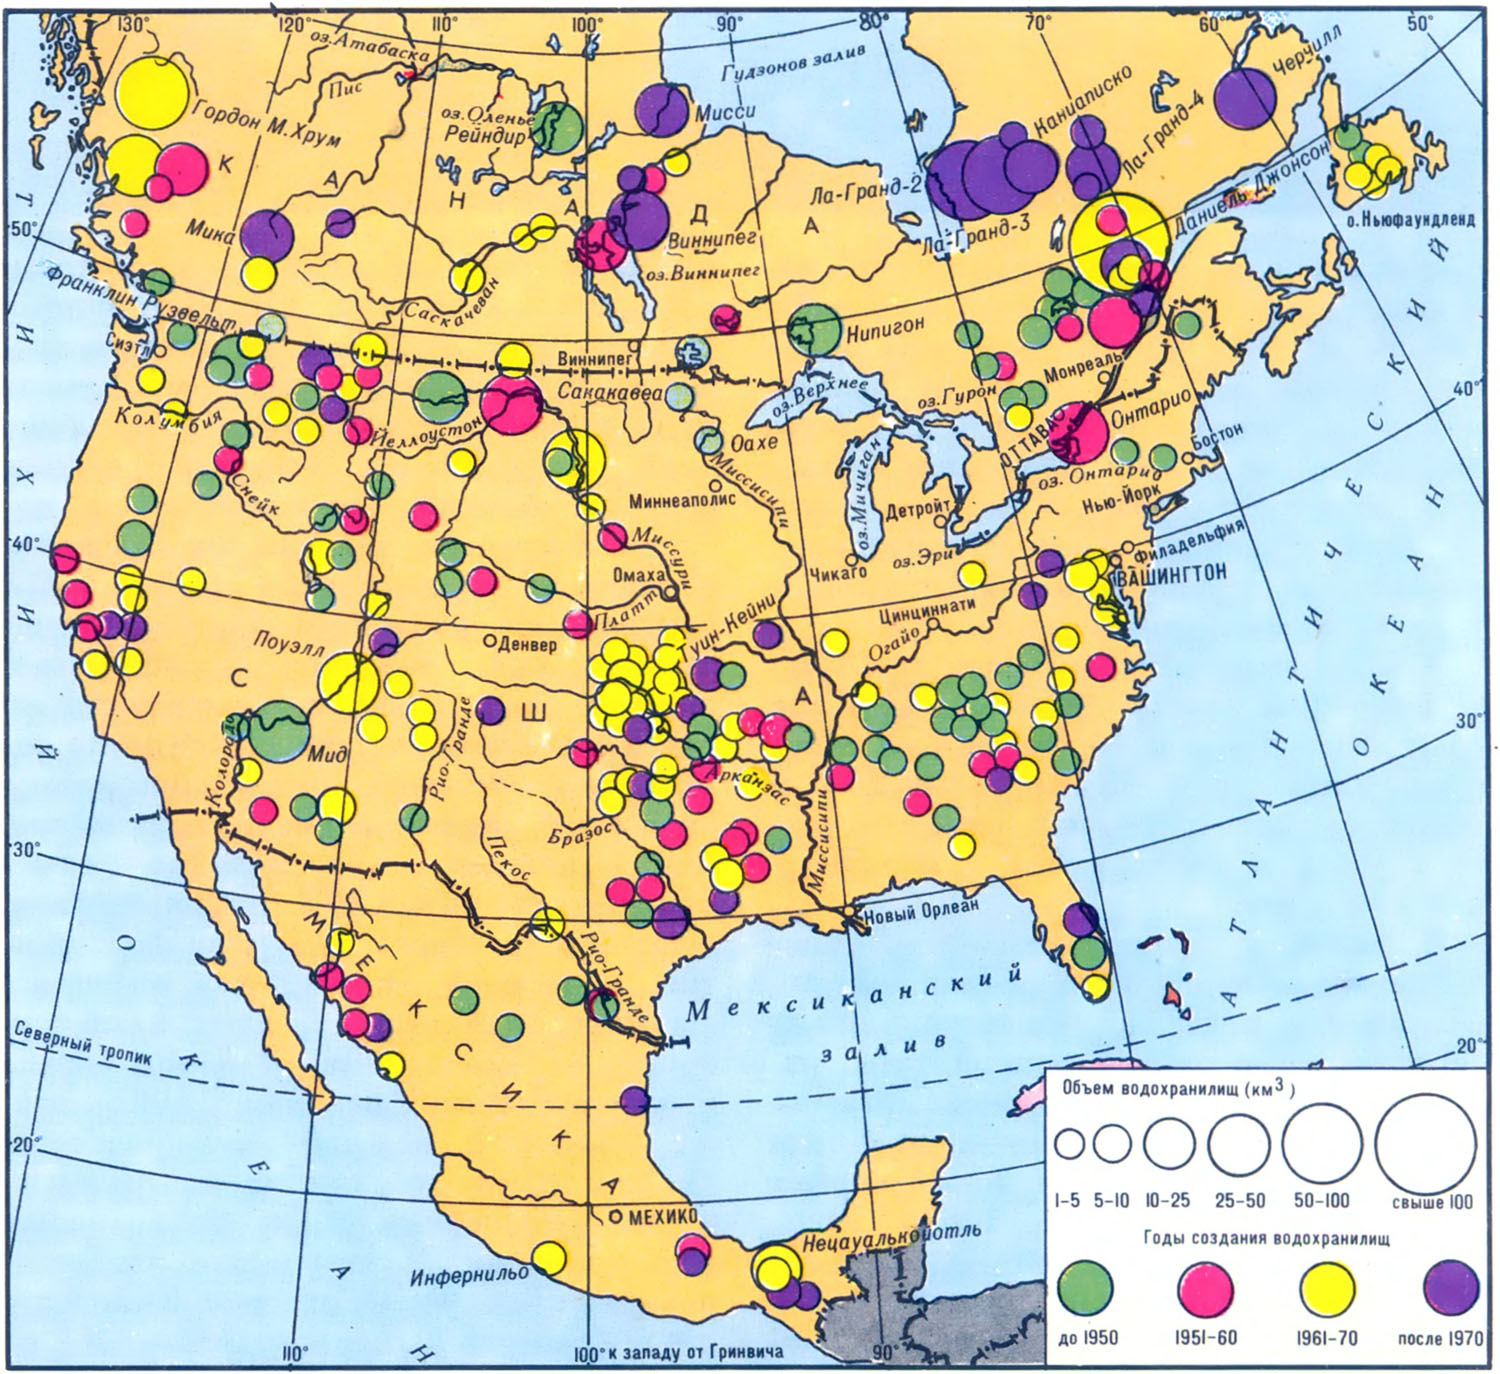 Богатство северной америки. Карта промышленности Северной Америки. Основные полезные ископаемые США на карте. Карта полезных ископаемых США И Канады. Полезные ископаемые Северной Америки на карте.